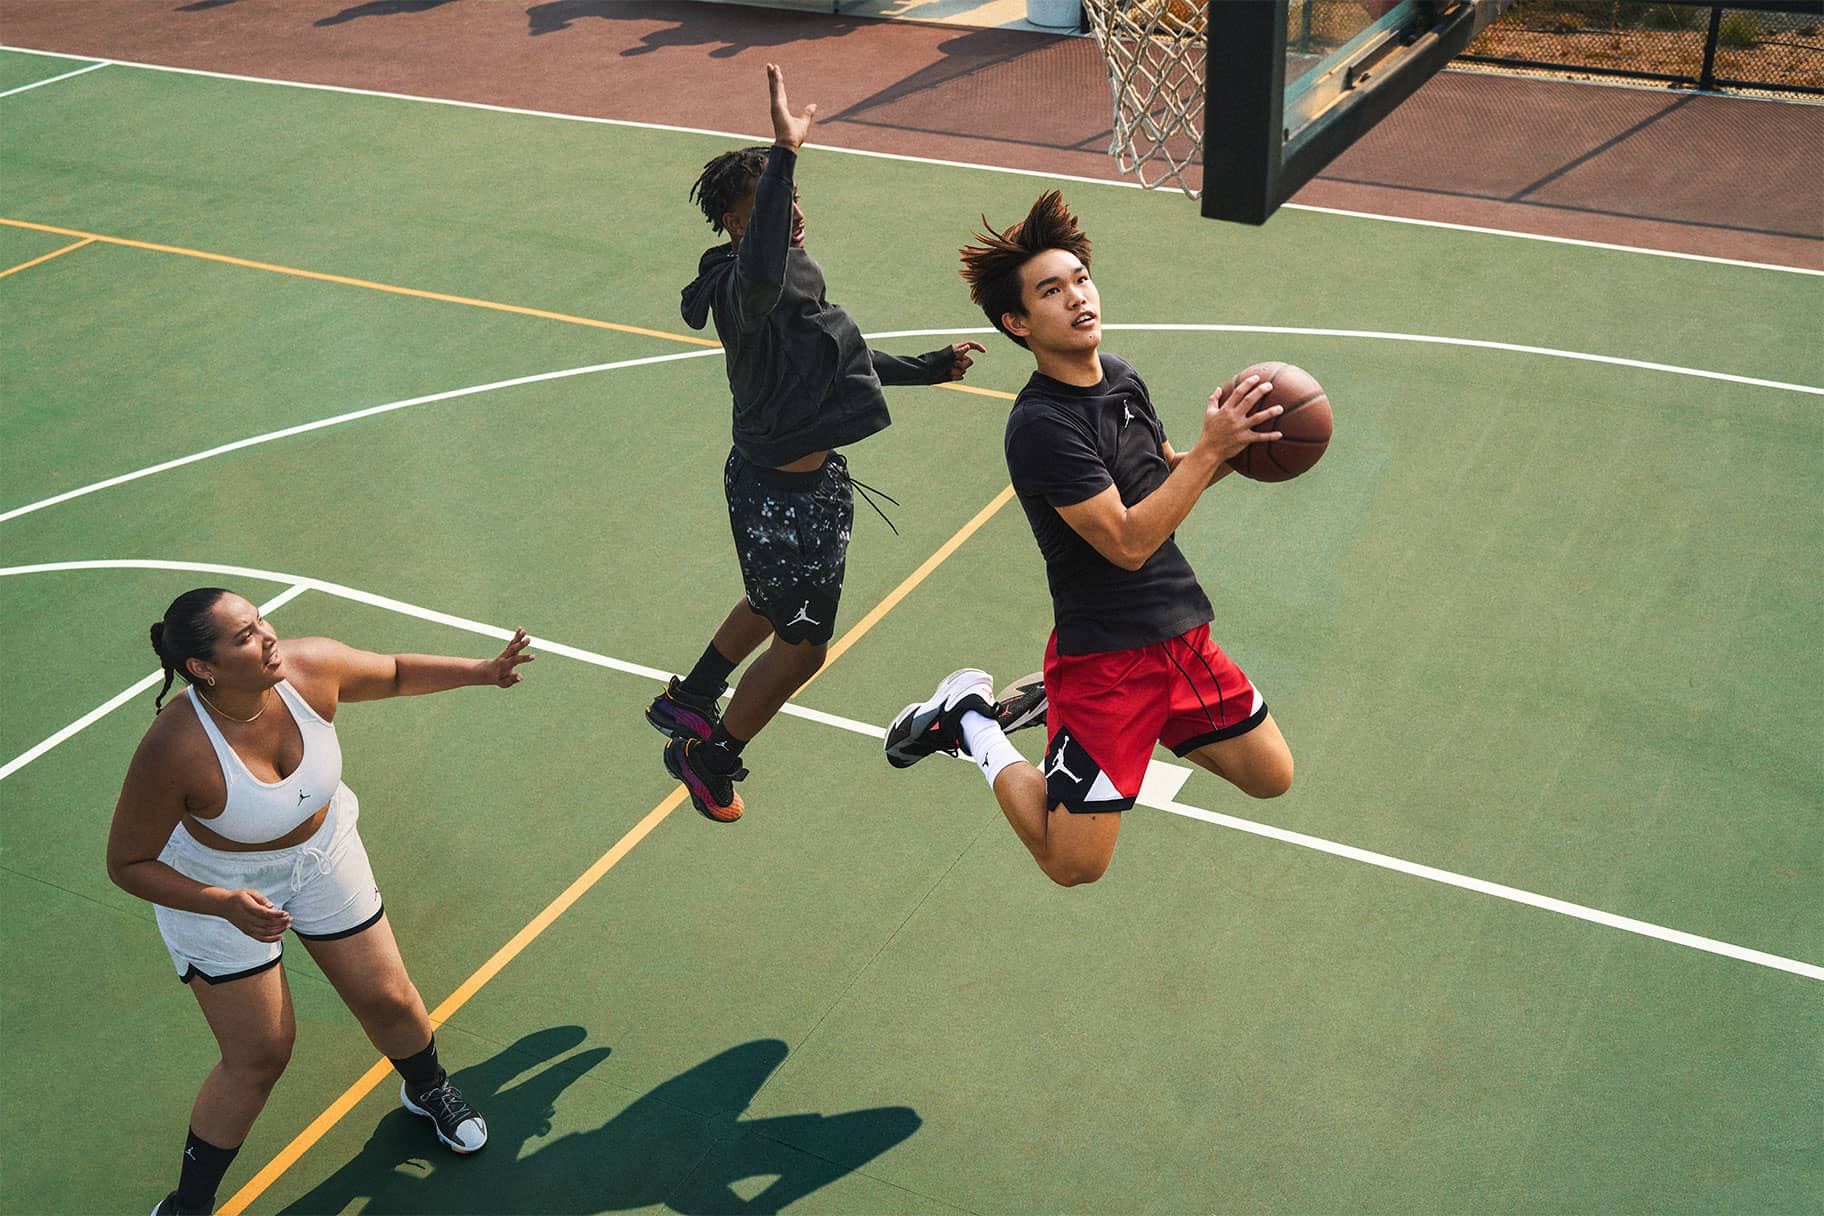 5 beneficios de jugar al baloncesto según la comunidad experta